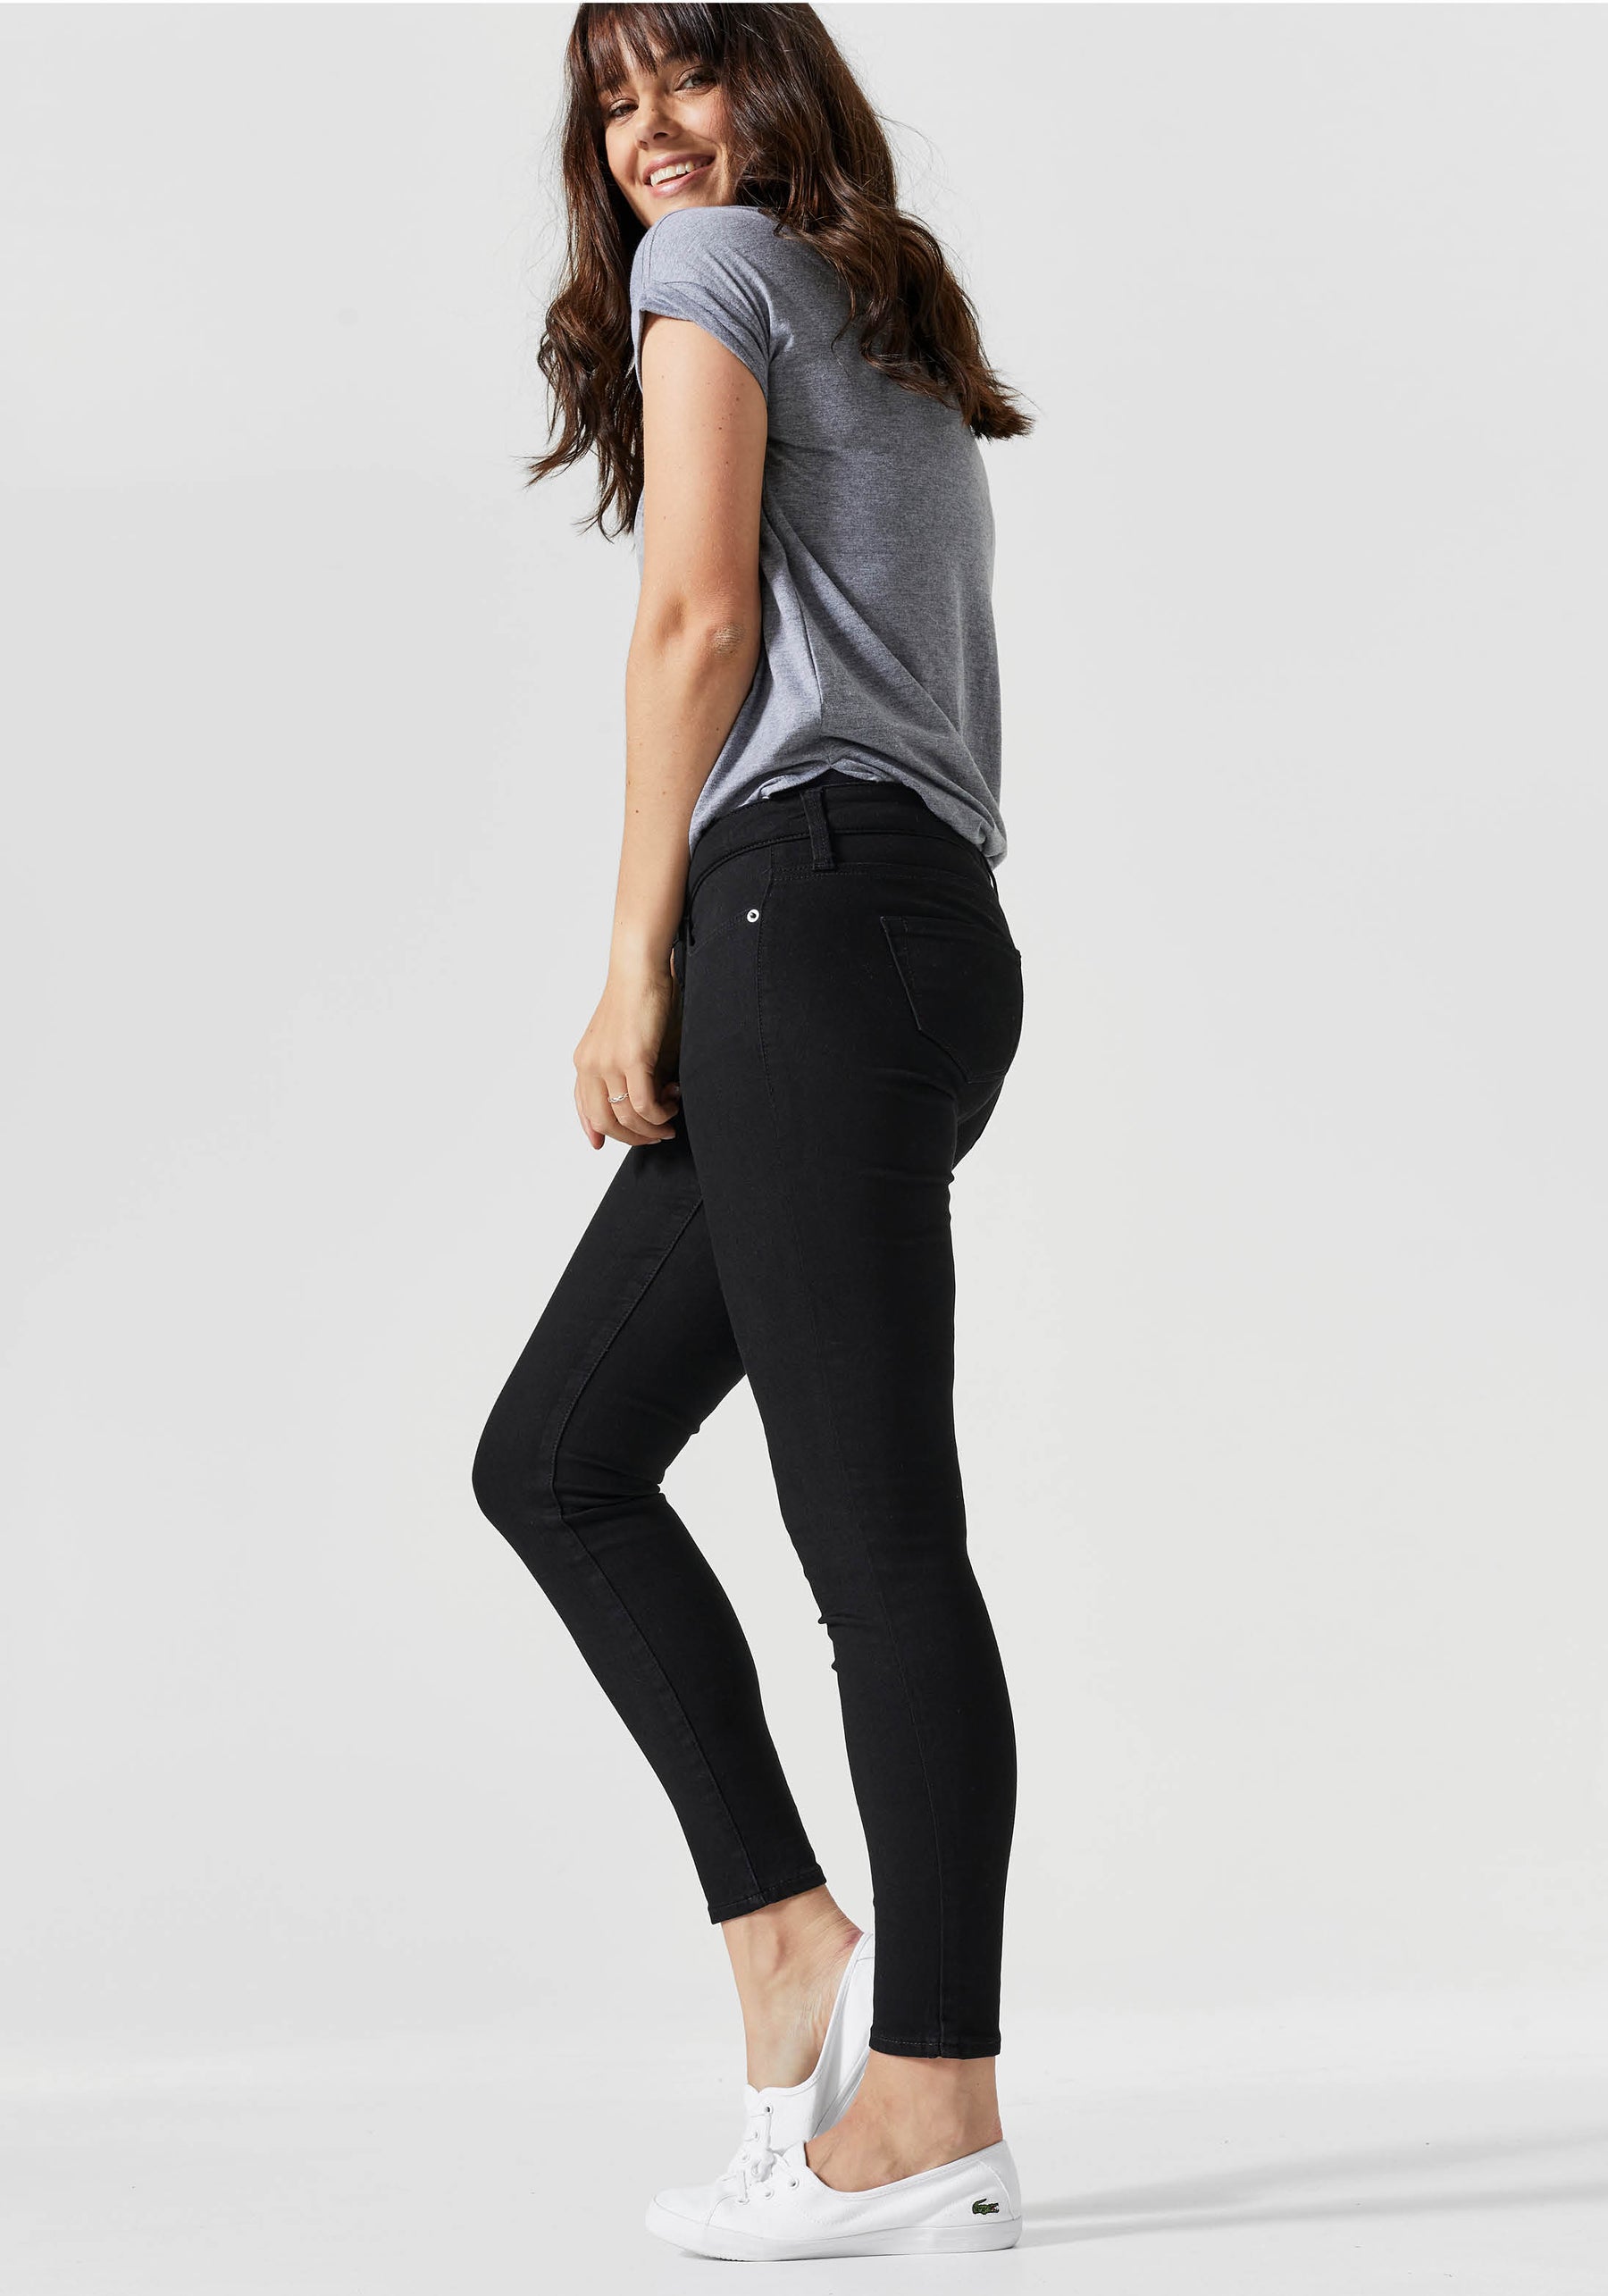 BLANQI® Denim Postpartum Support Straight Crop Jeans  Live in jeans,  Straight crop jeans, Postpartum tummy